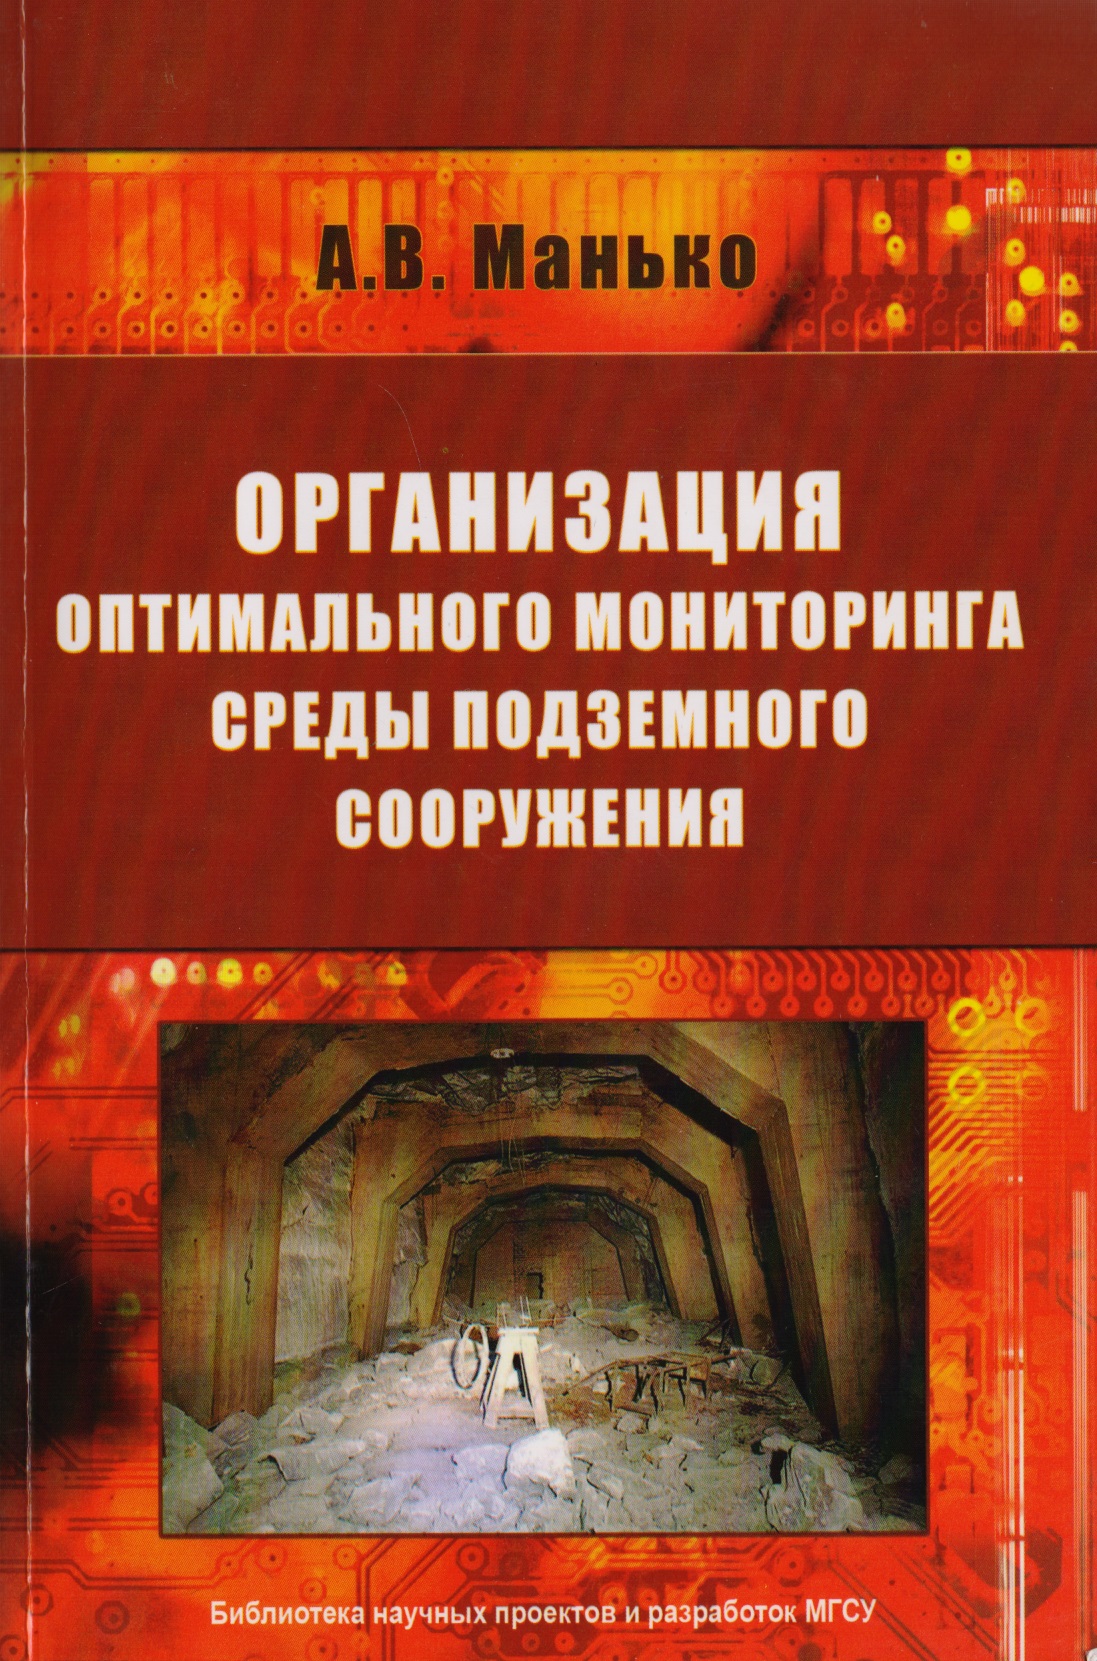 Манько Артур Владимирович - Организация оптимального мониторинга среды подземного сооружения